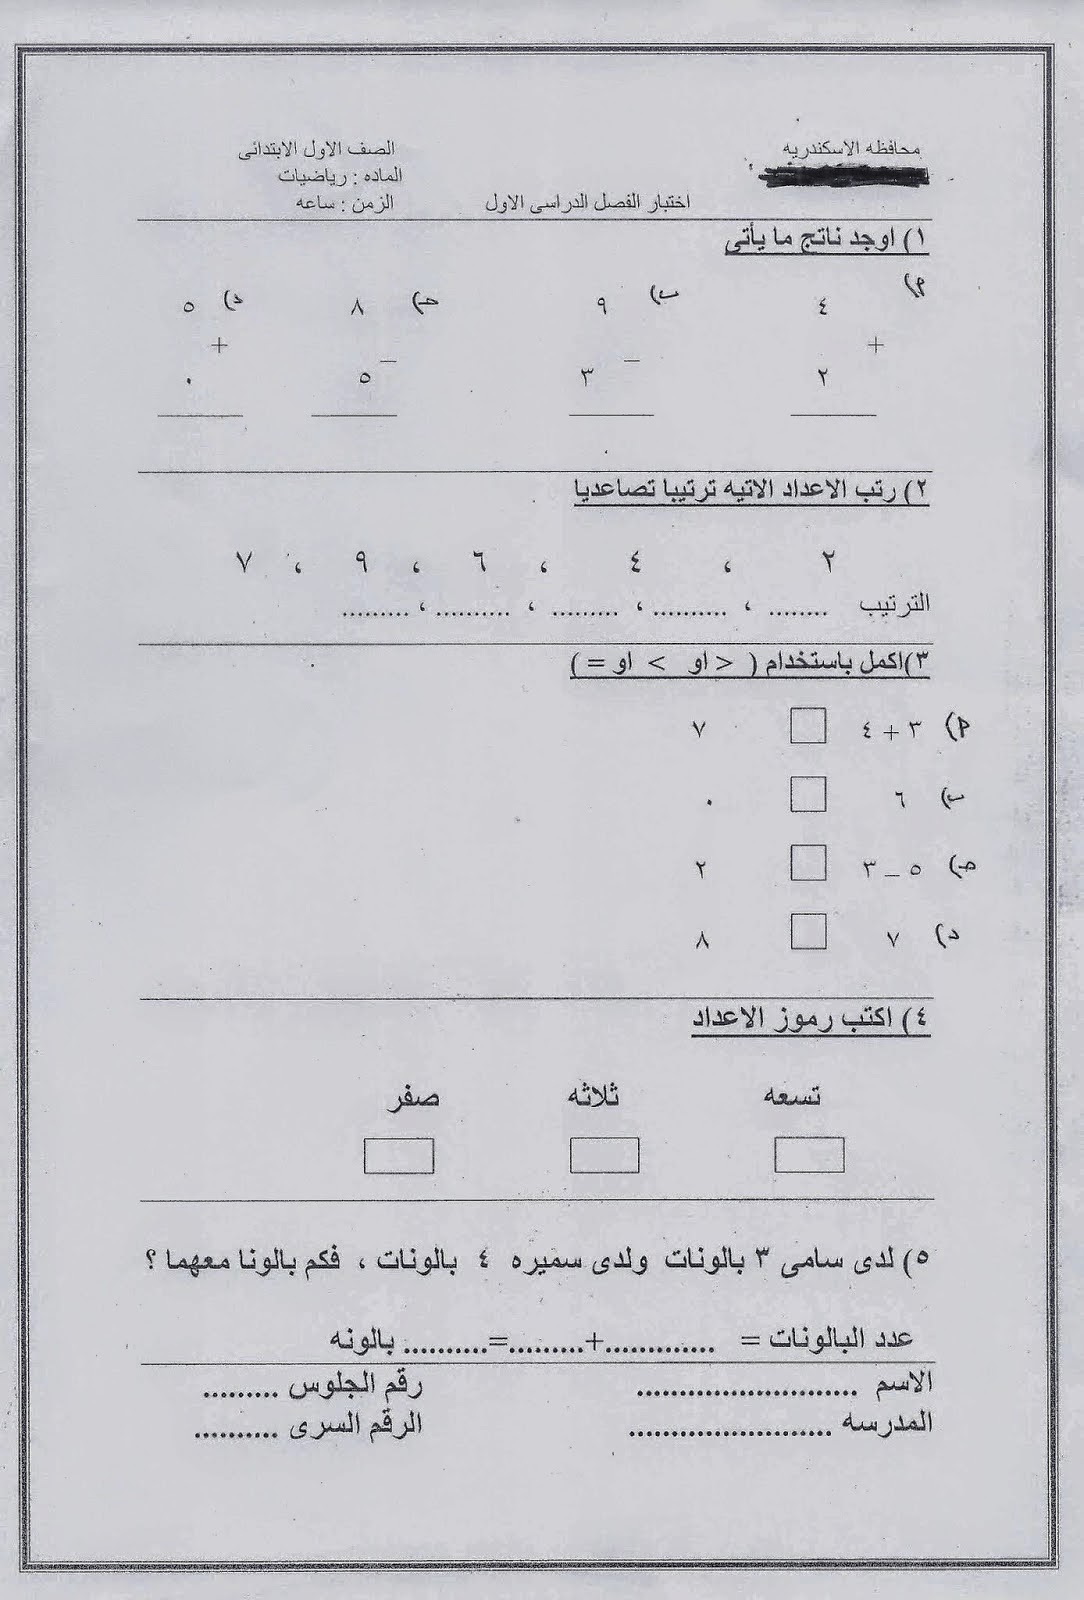 امتحانات كل مواد الاول الابتدائي الترم الأول 2015 مدارس مصر عربى ولغات